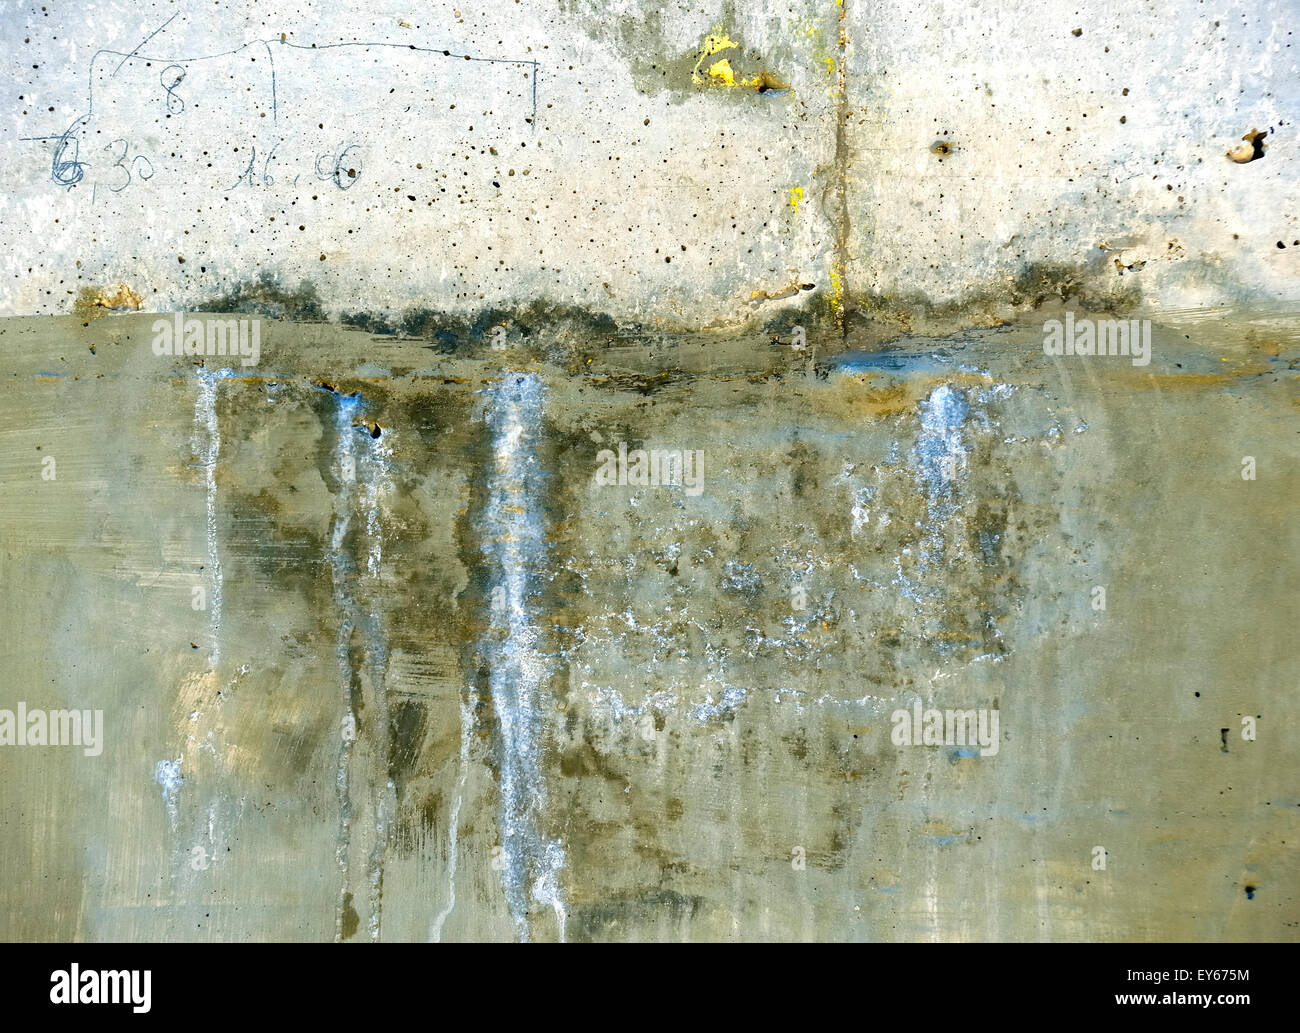 Infiltrazioni di acqua in un muro di cemento attraverso una fessurazione Foto Stock